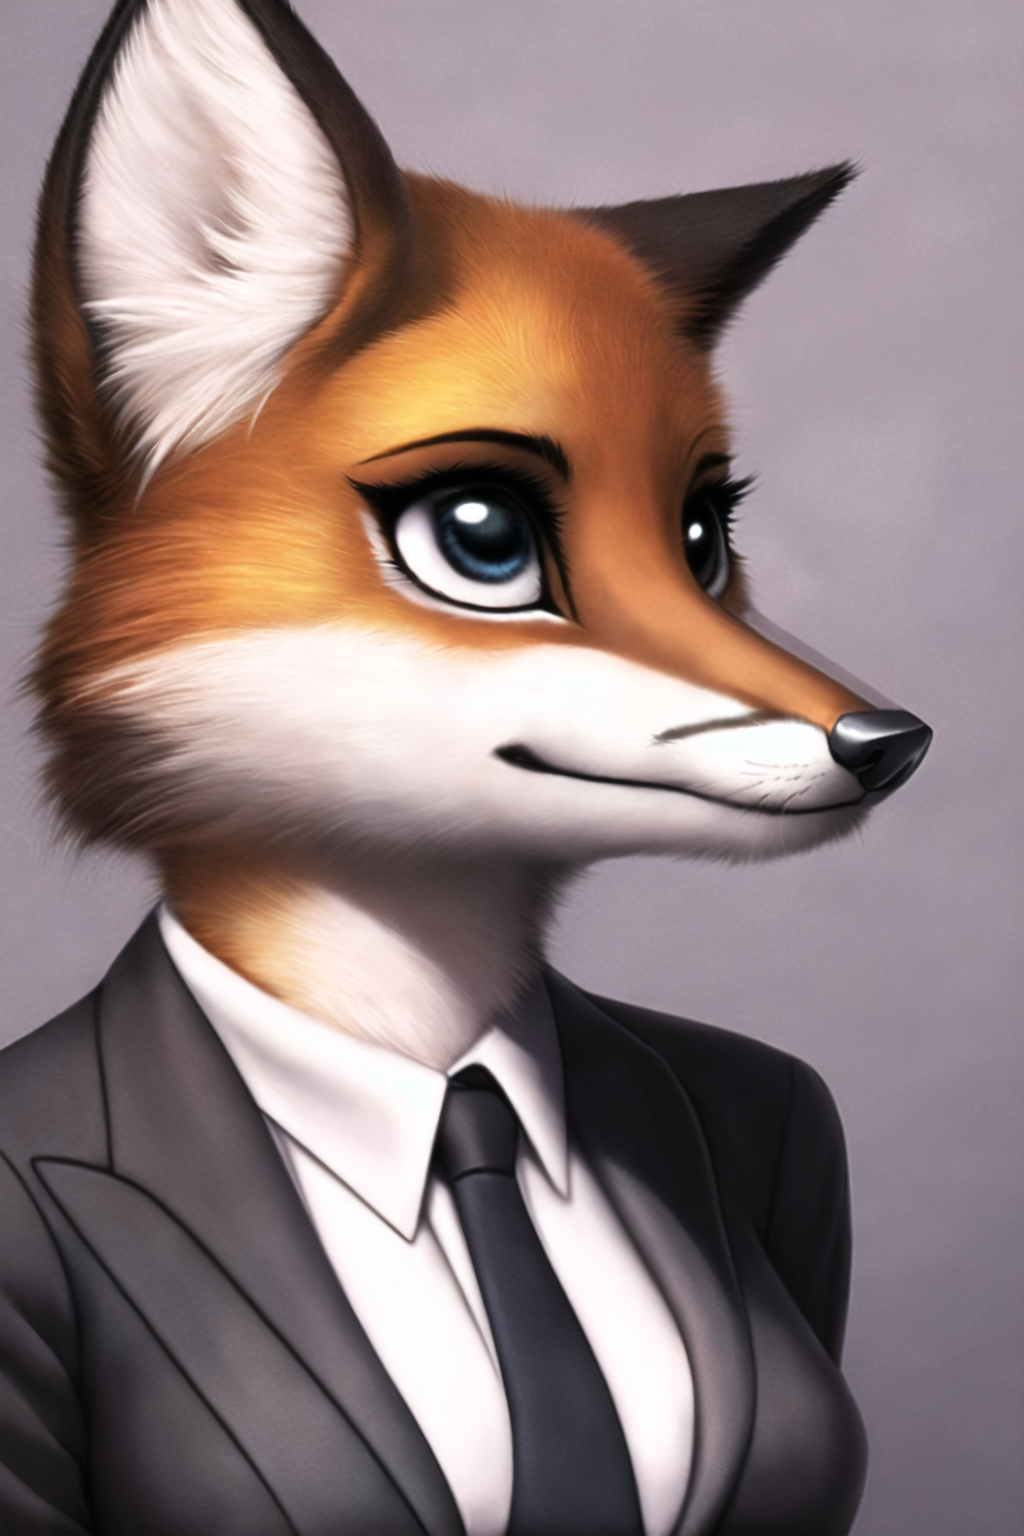 Fox suit 10 by hardboildchicken on DeviantArt